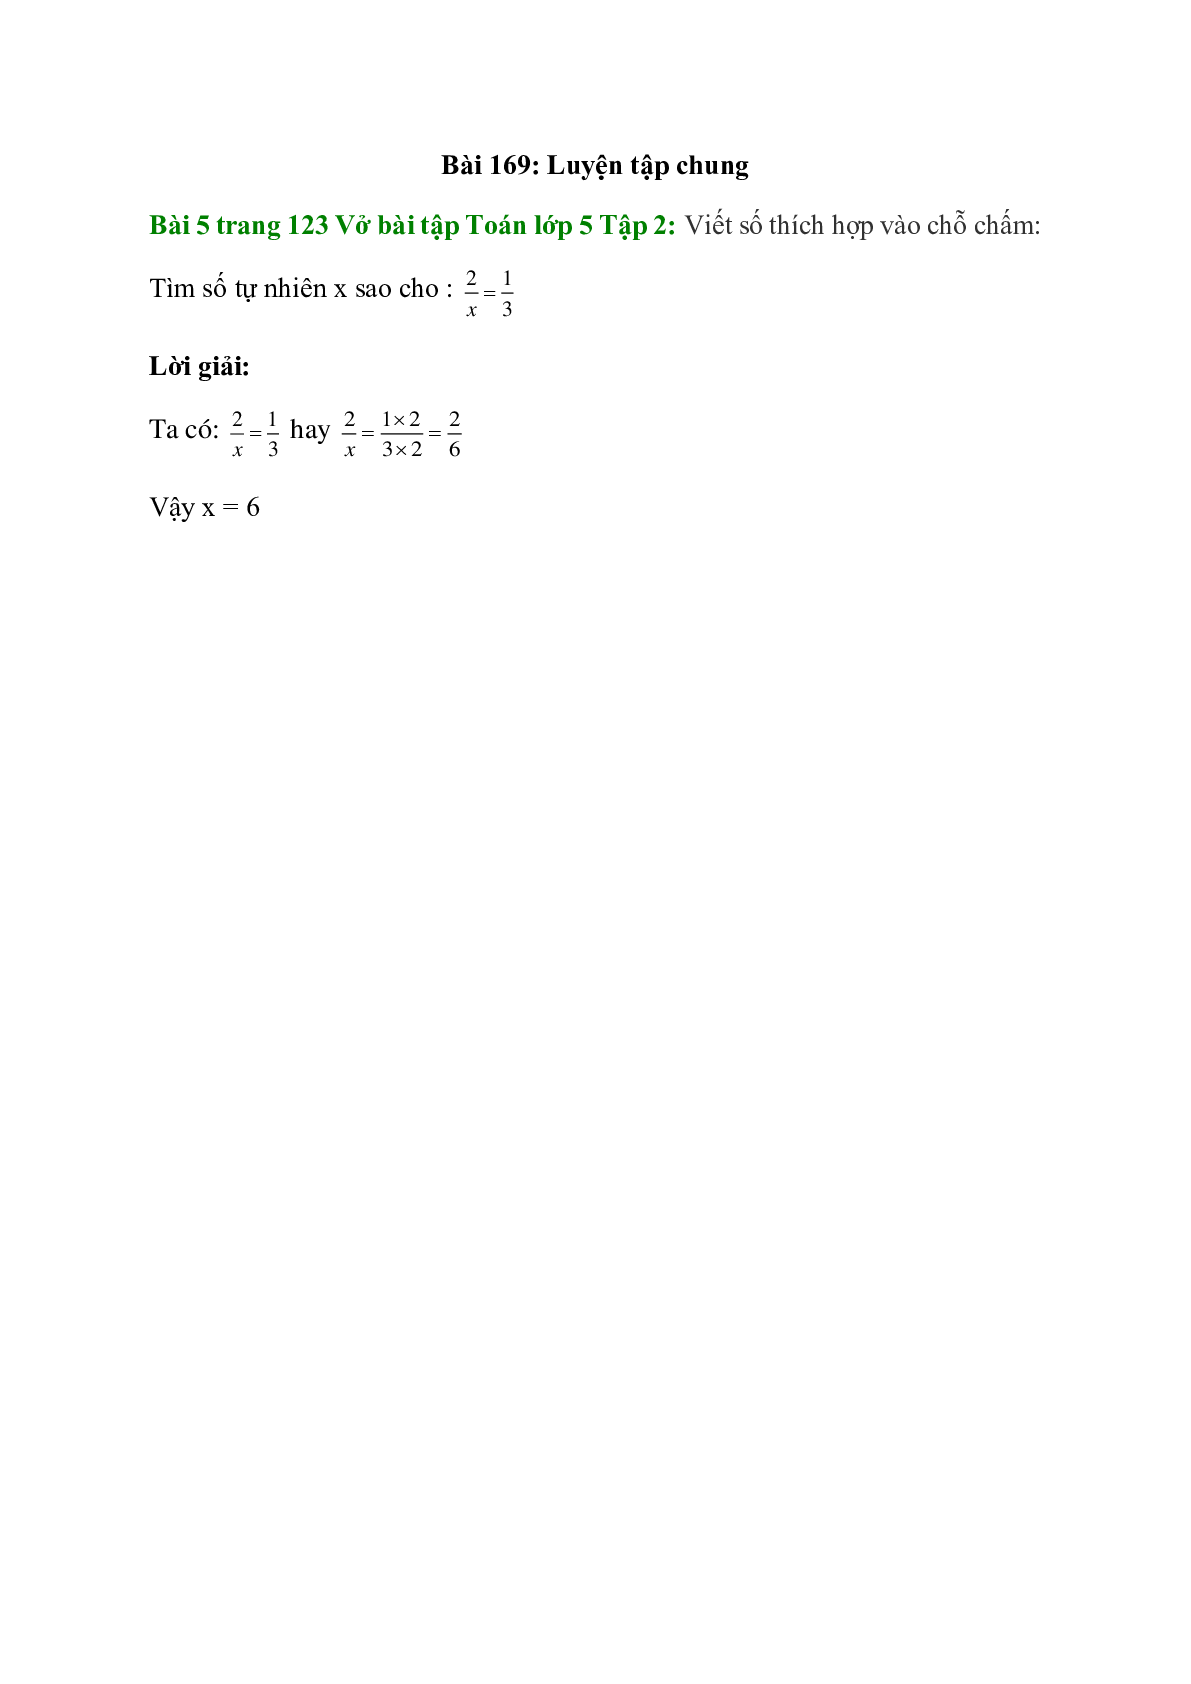 Viết số thích hợp vào chỗ chấm: Tìm số tự nhiên x sao cho:  2/x = 1/3 (trang 1)